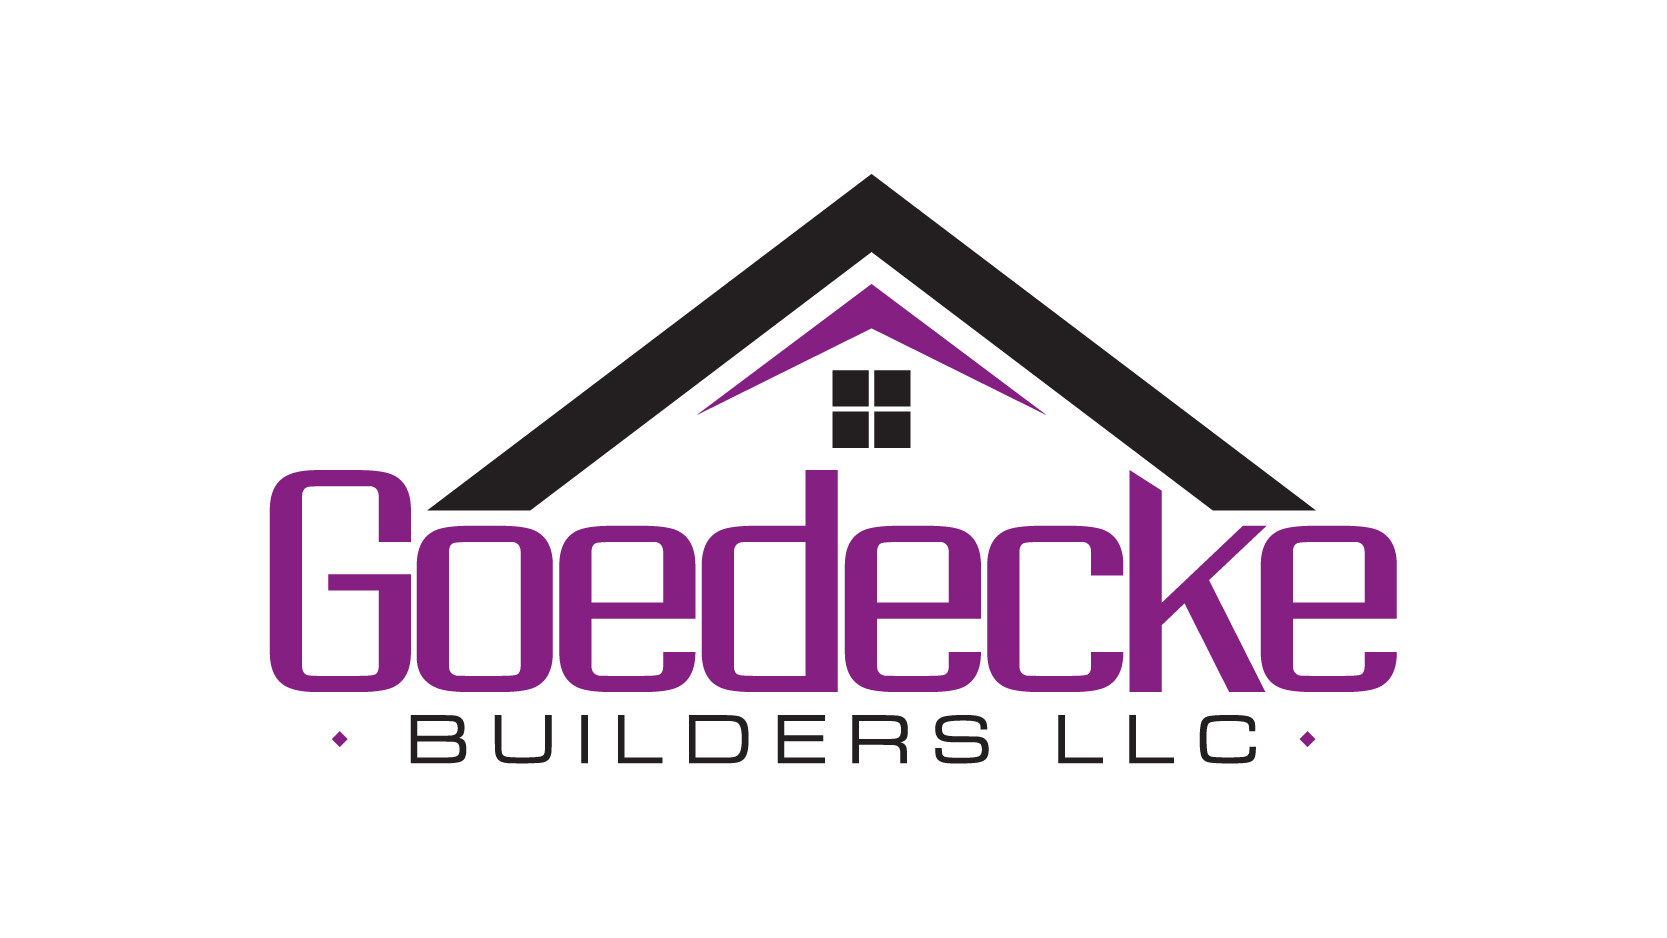 Goedecke Builders LLC